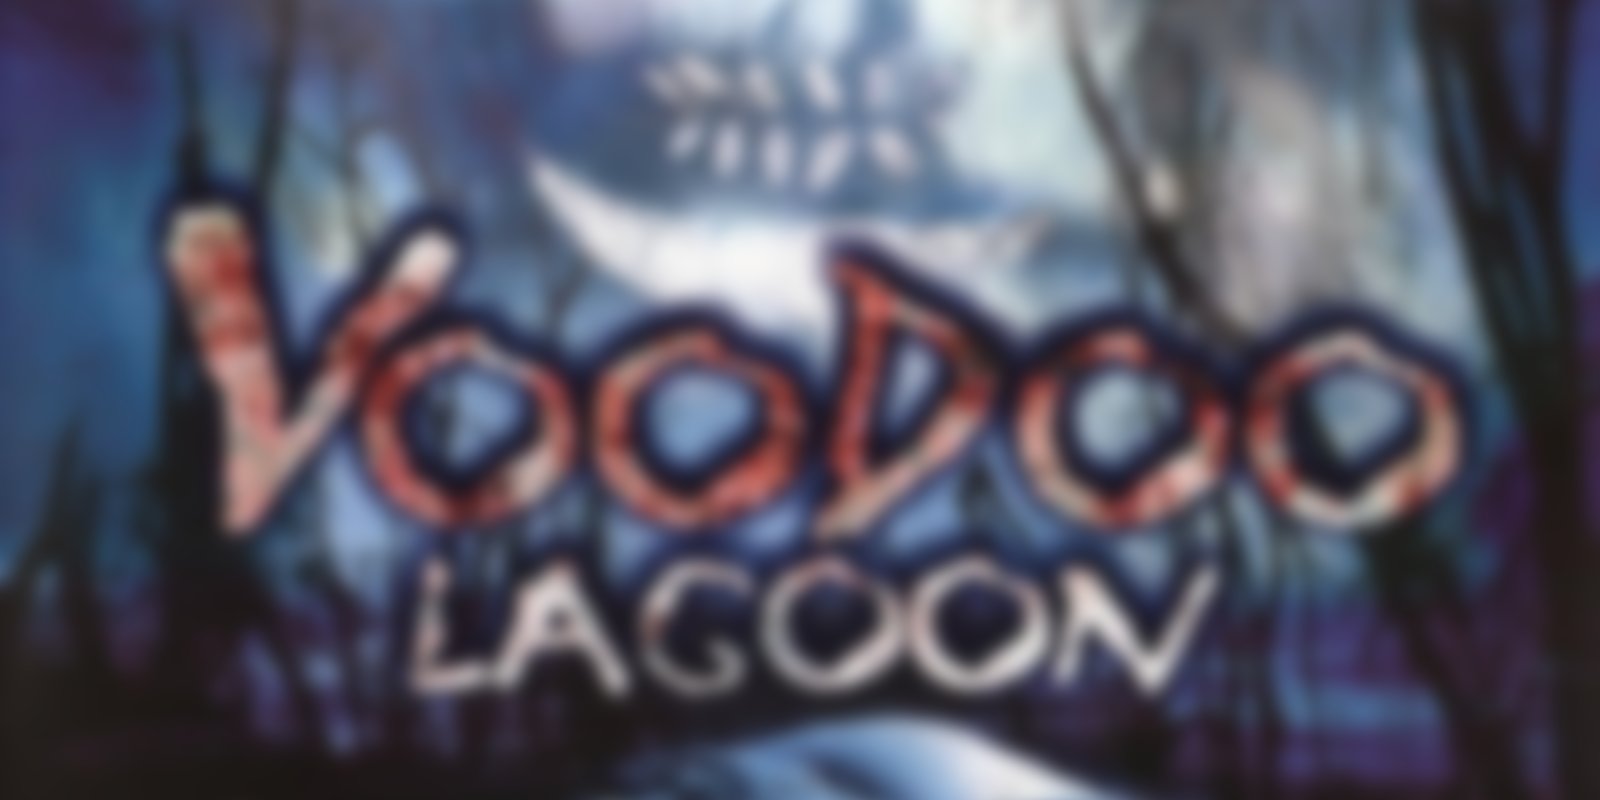 Voodoo Lagoon - Ferien in den Tod